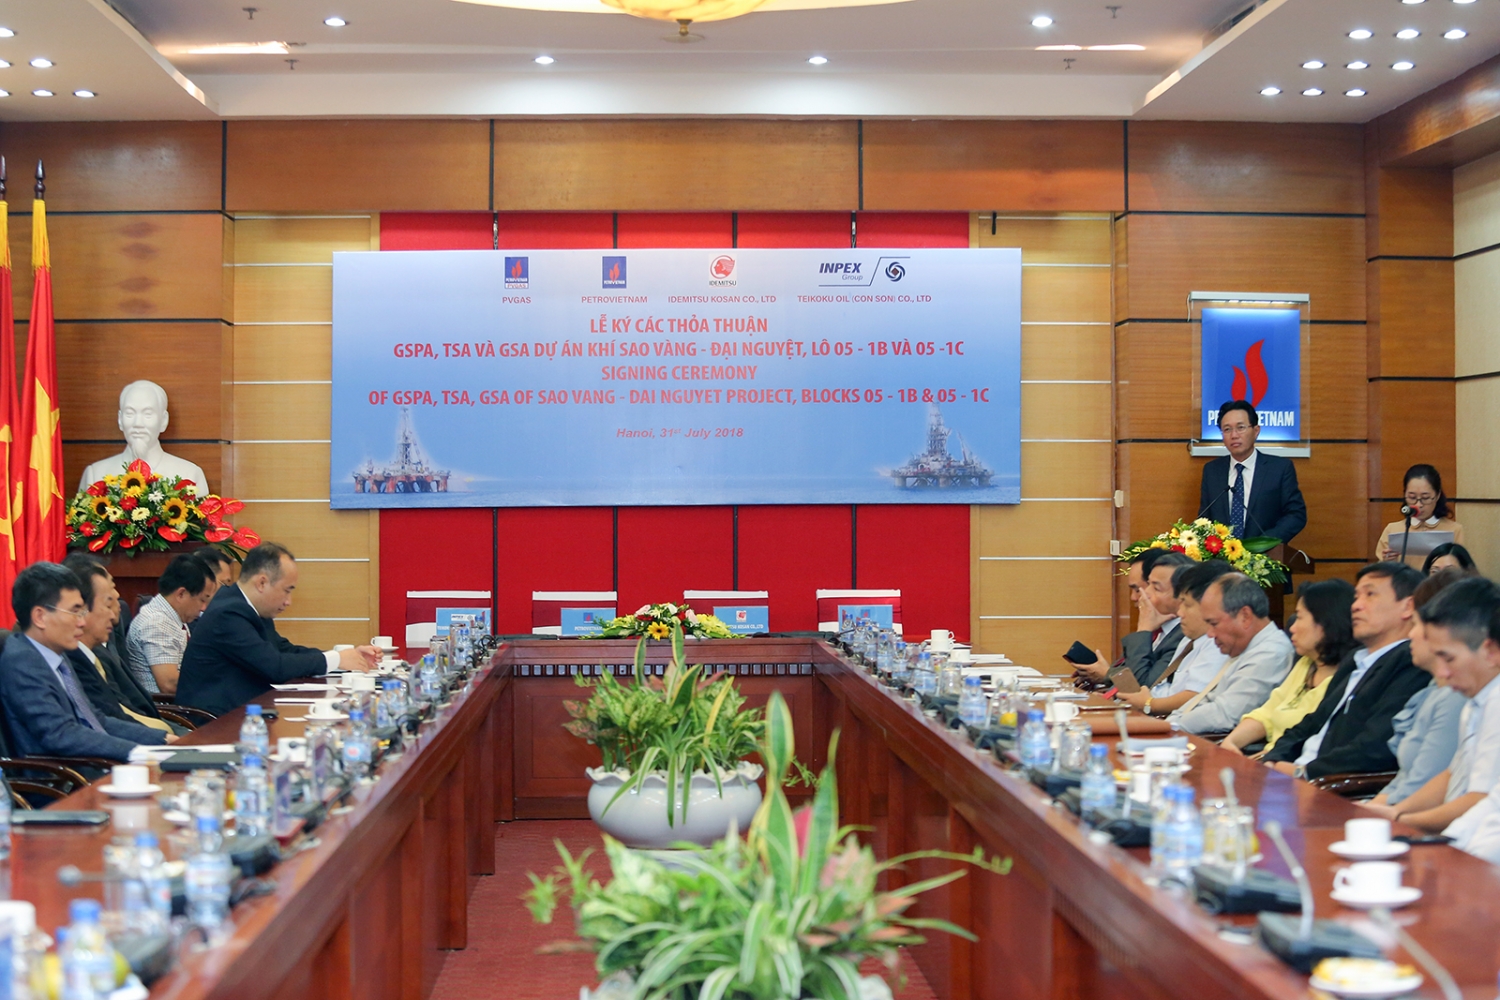 Tập đoàn Dầu khí Việt Nam ký kết các hợp đồng phát triển dự án Sao Vàng – Đại Nguyệt (Lô 05-1b&c)